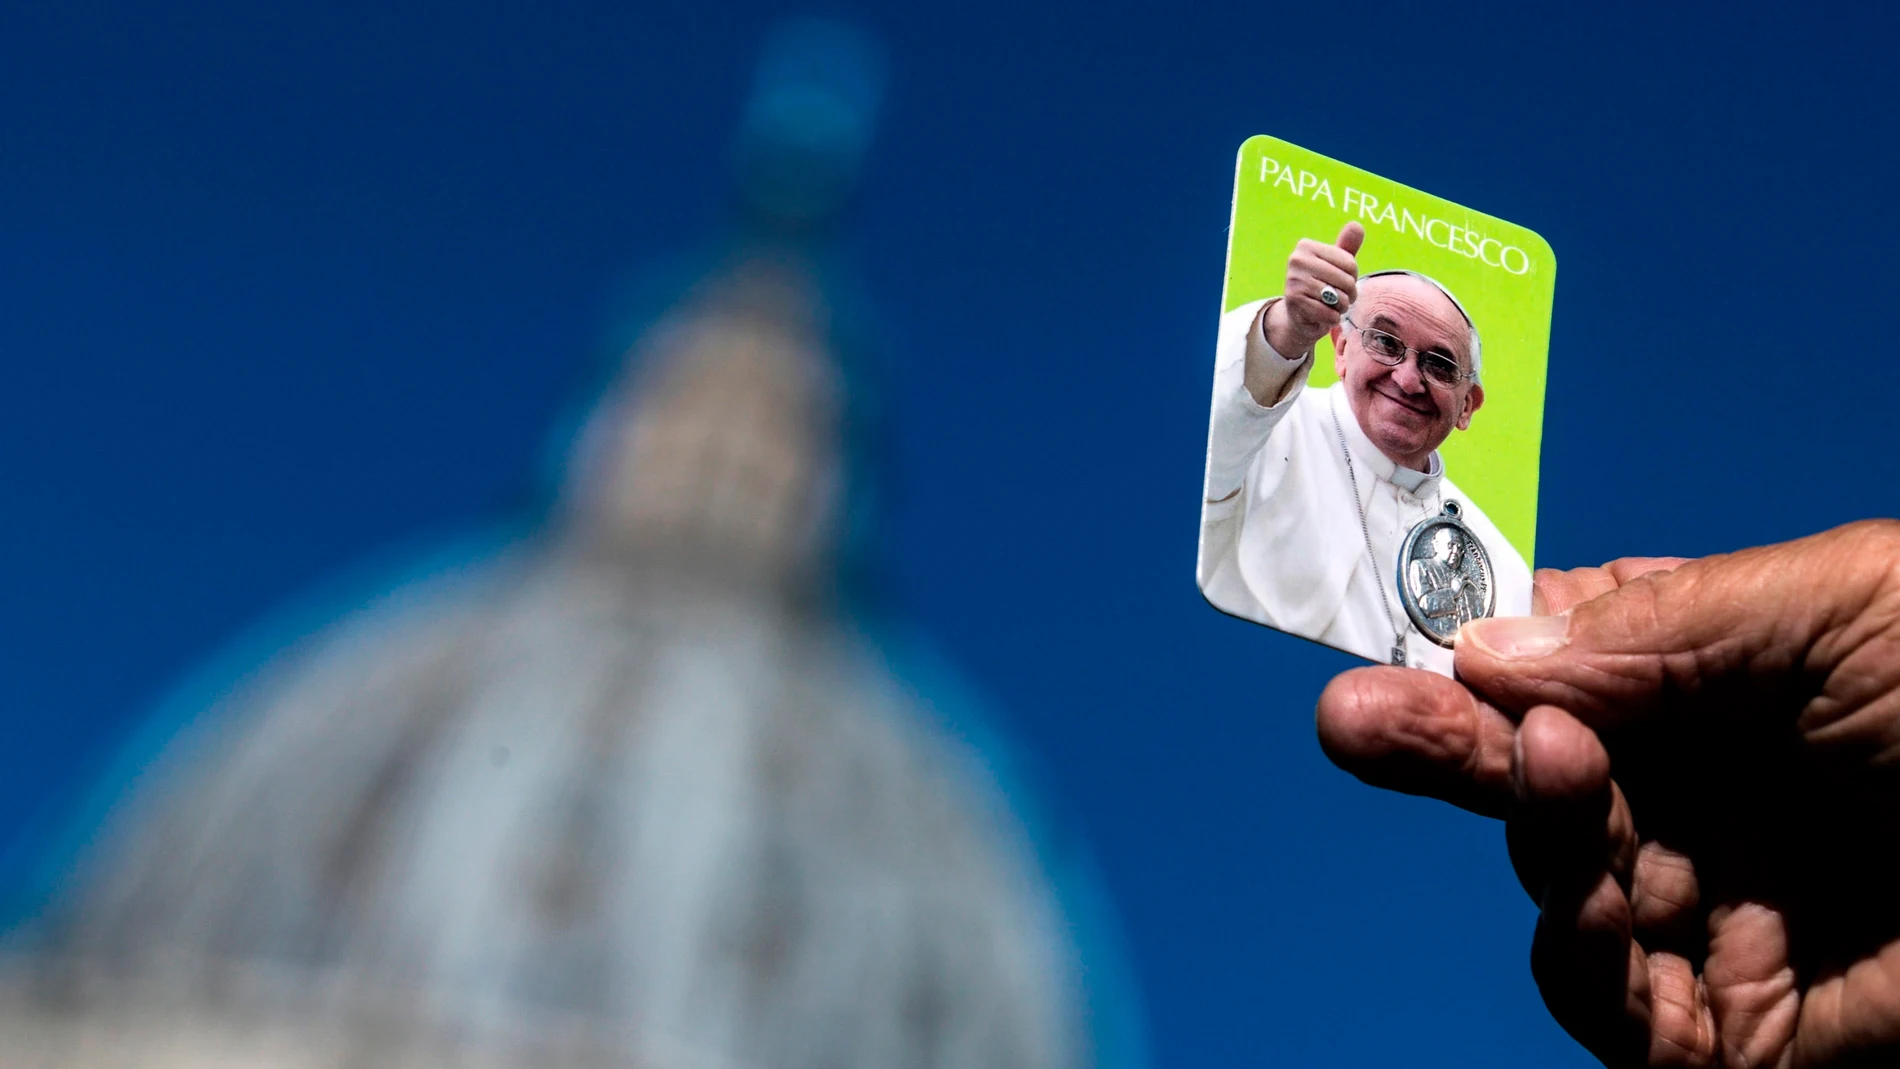 El Papa Francisco se somete a una operación de colon programada